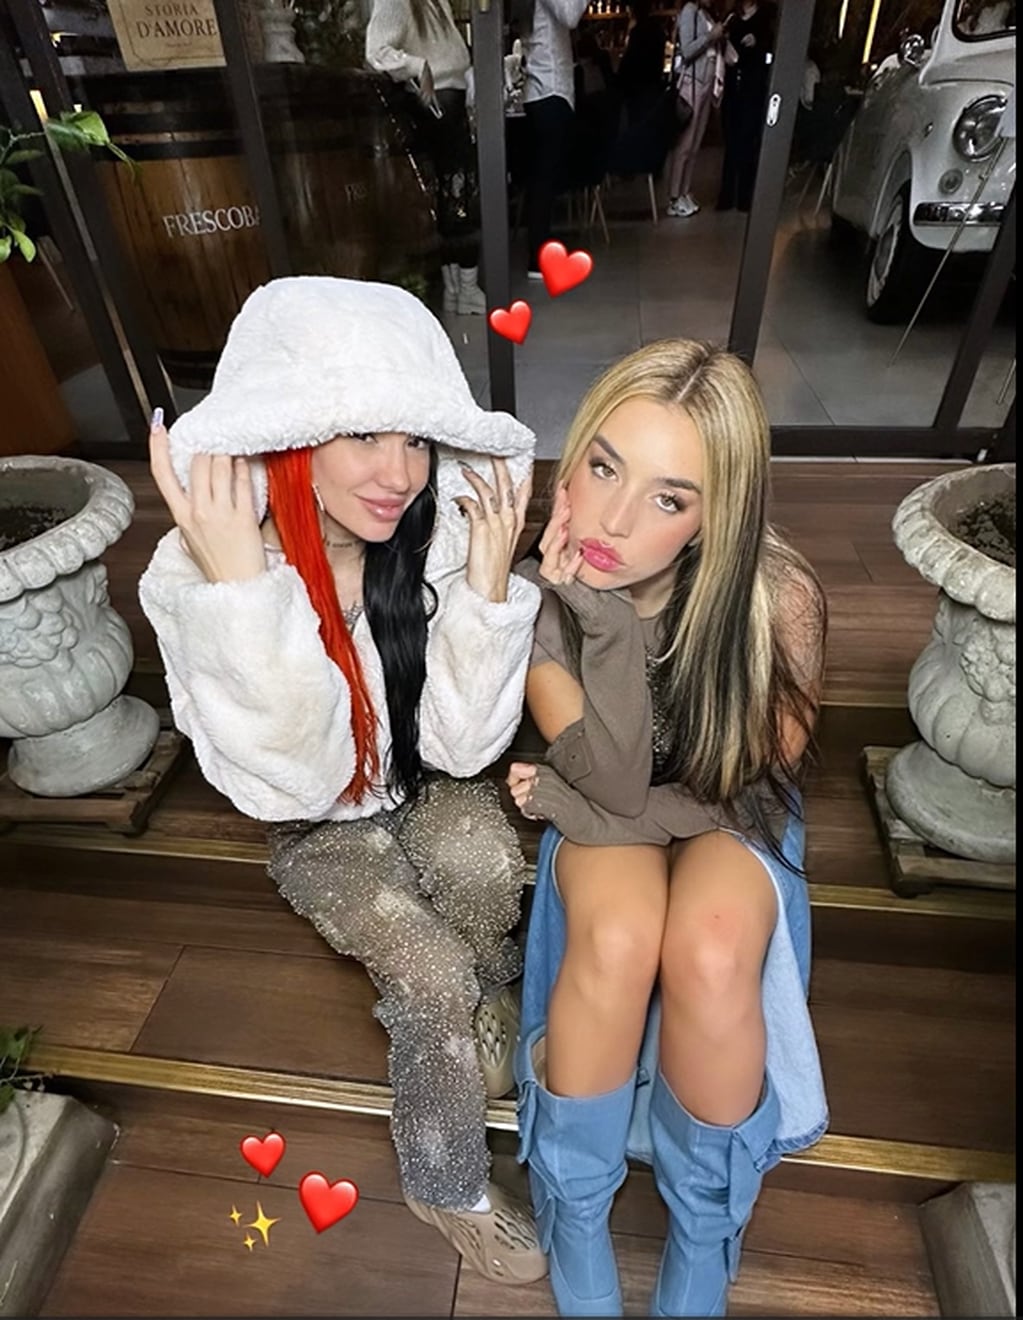 La Joaqui y Lola Índigo encendieron Instagram posando juntas con un estilo super trendy y jugado